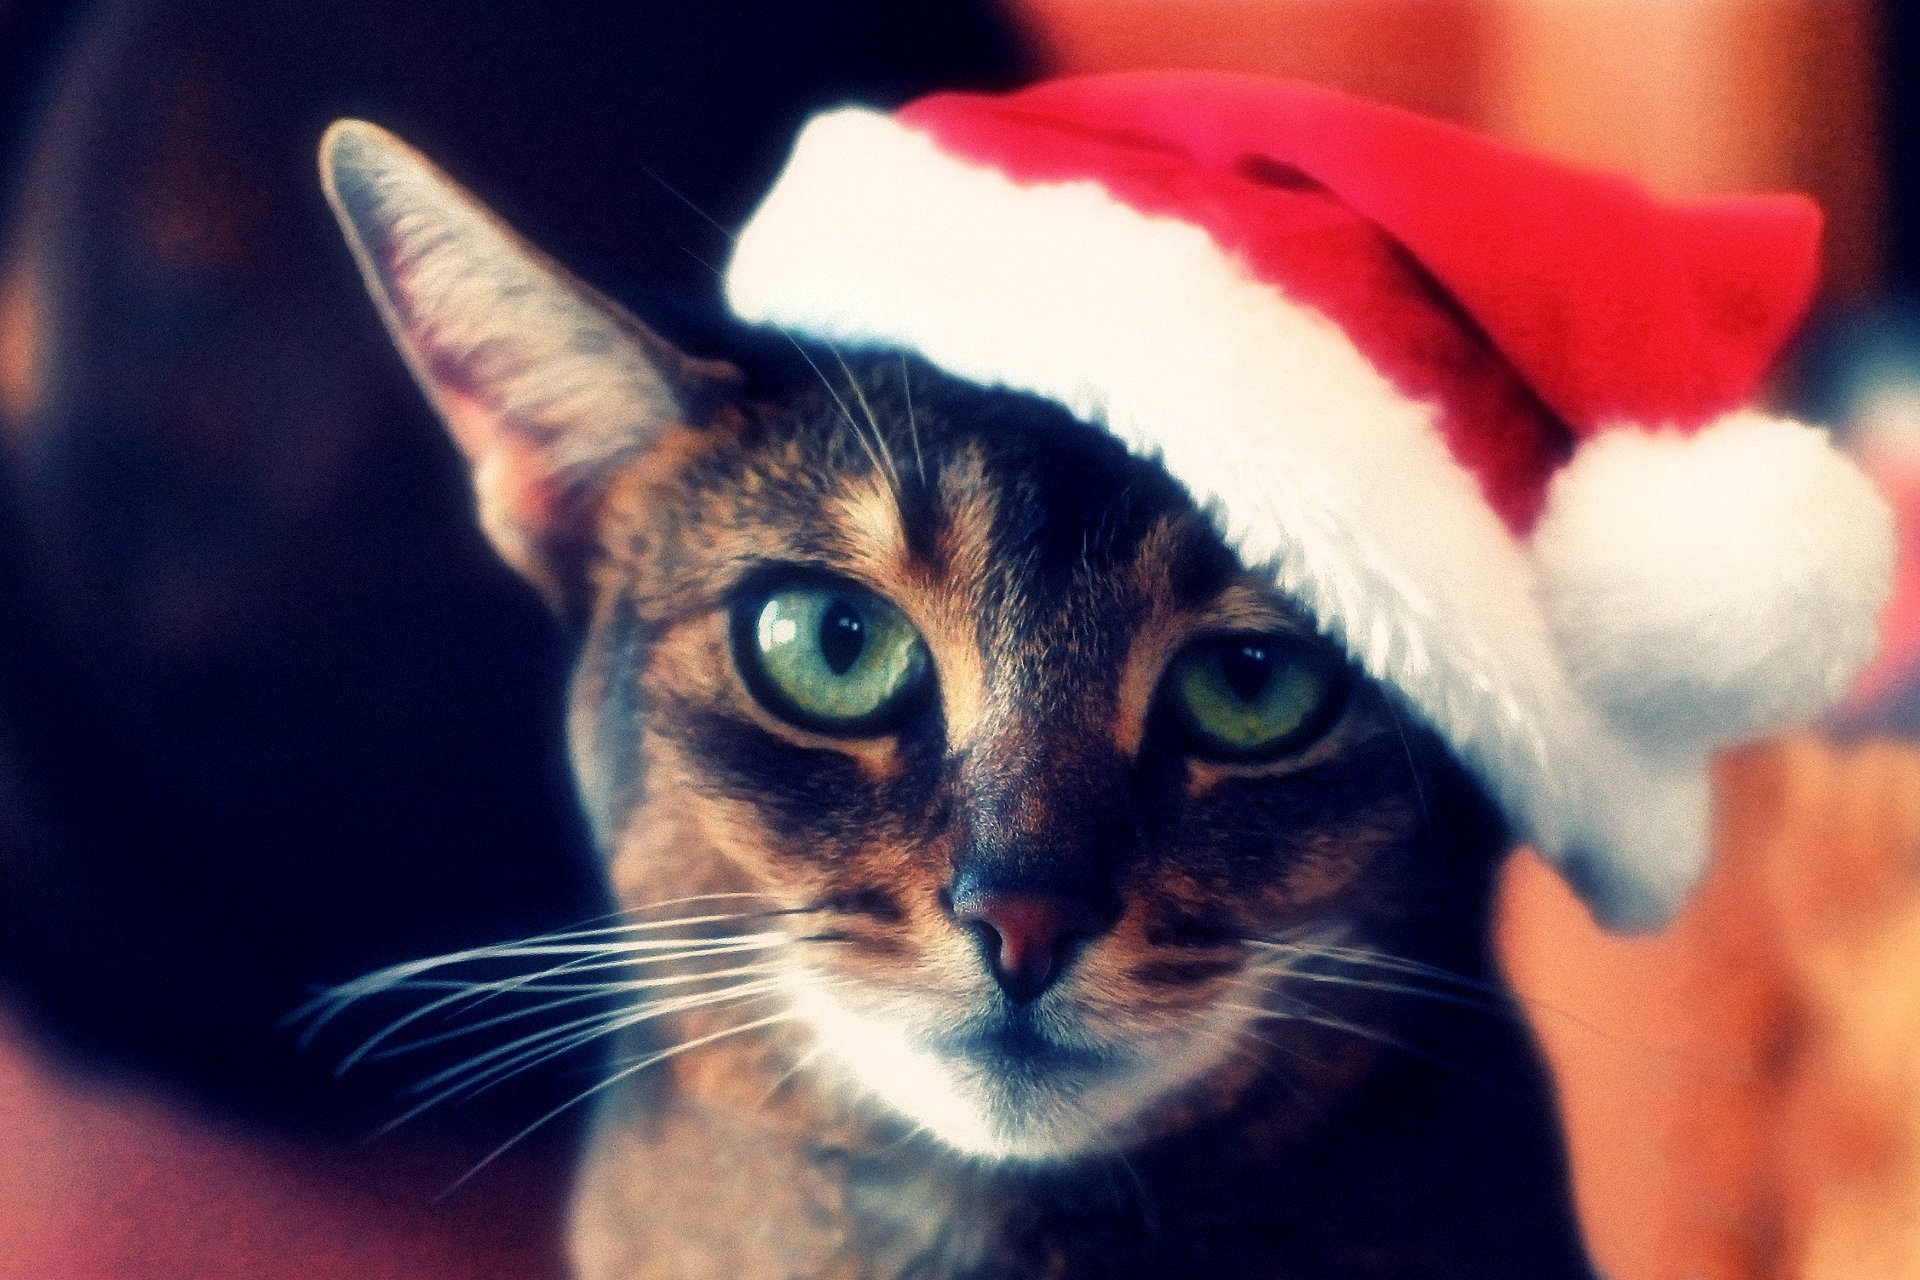 Фото на аву кошки. Новогодний кот. Кот в новогодней шапке. Кнот в новогодней шапке. Новогодние аватарки.